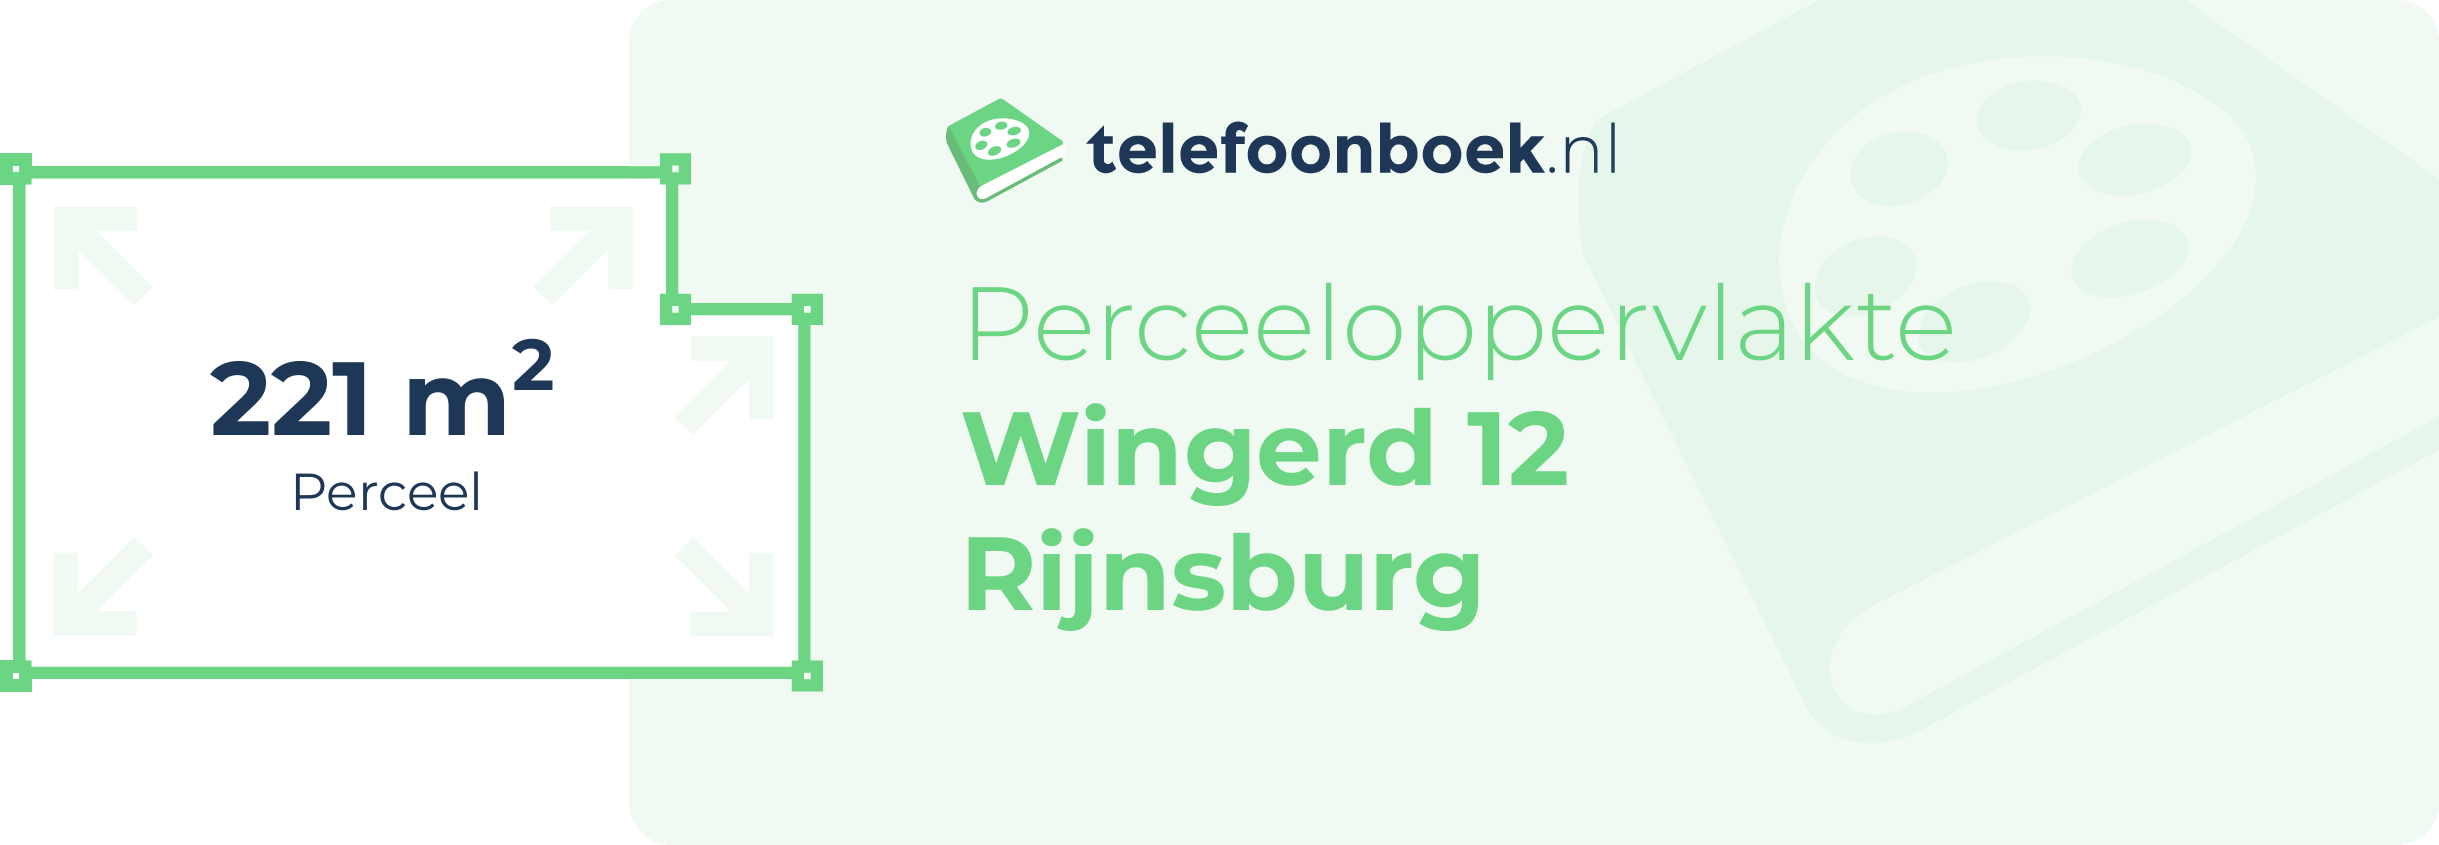 Perceeloppervlakte Wingerd 12 Rijnsburg